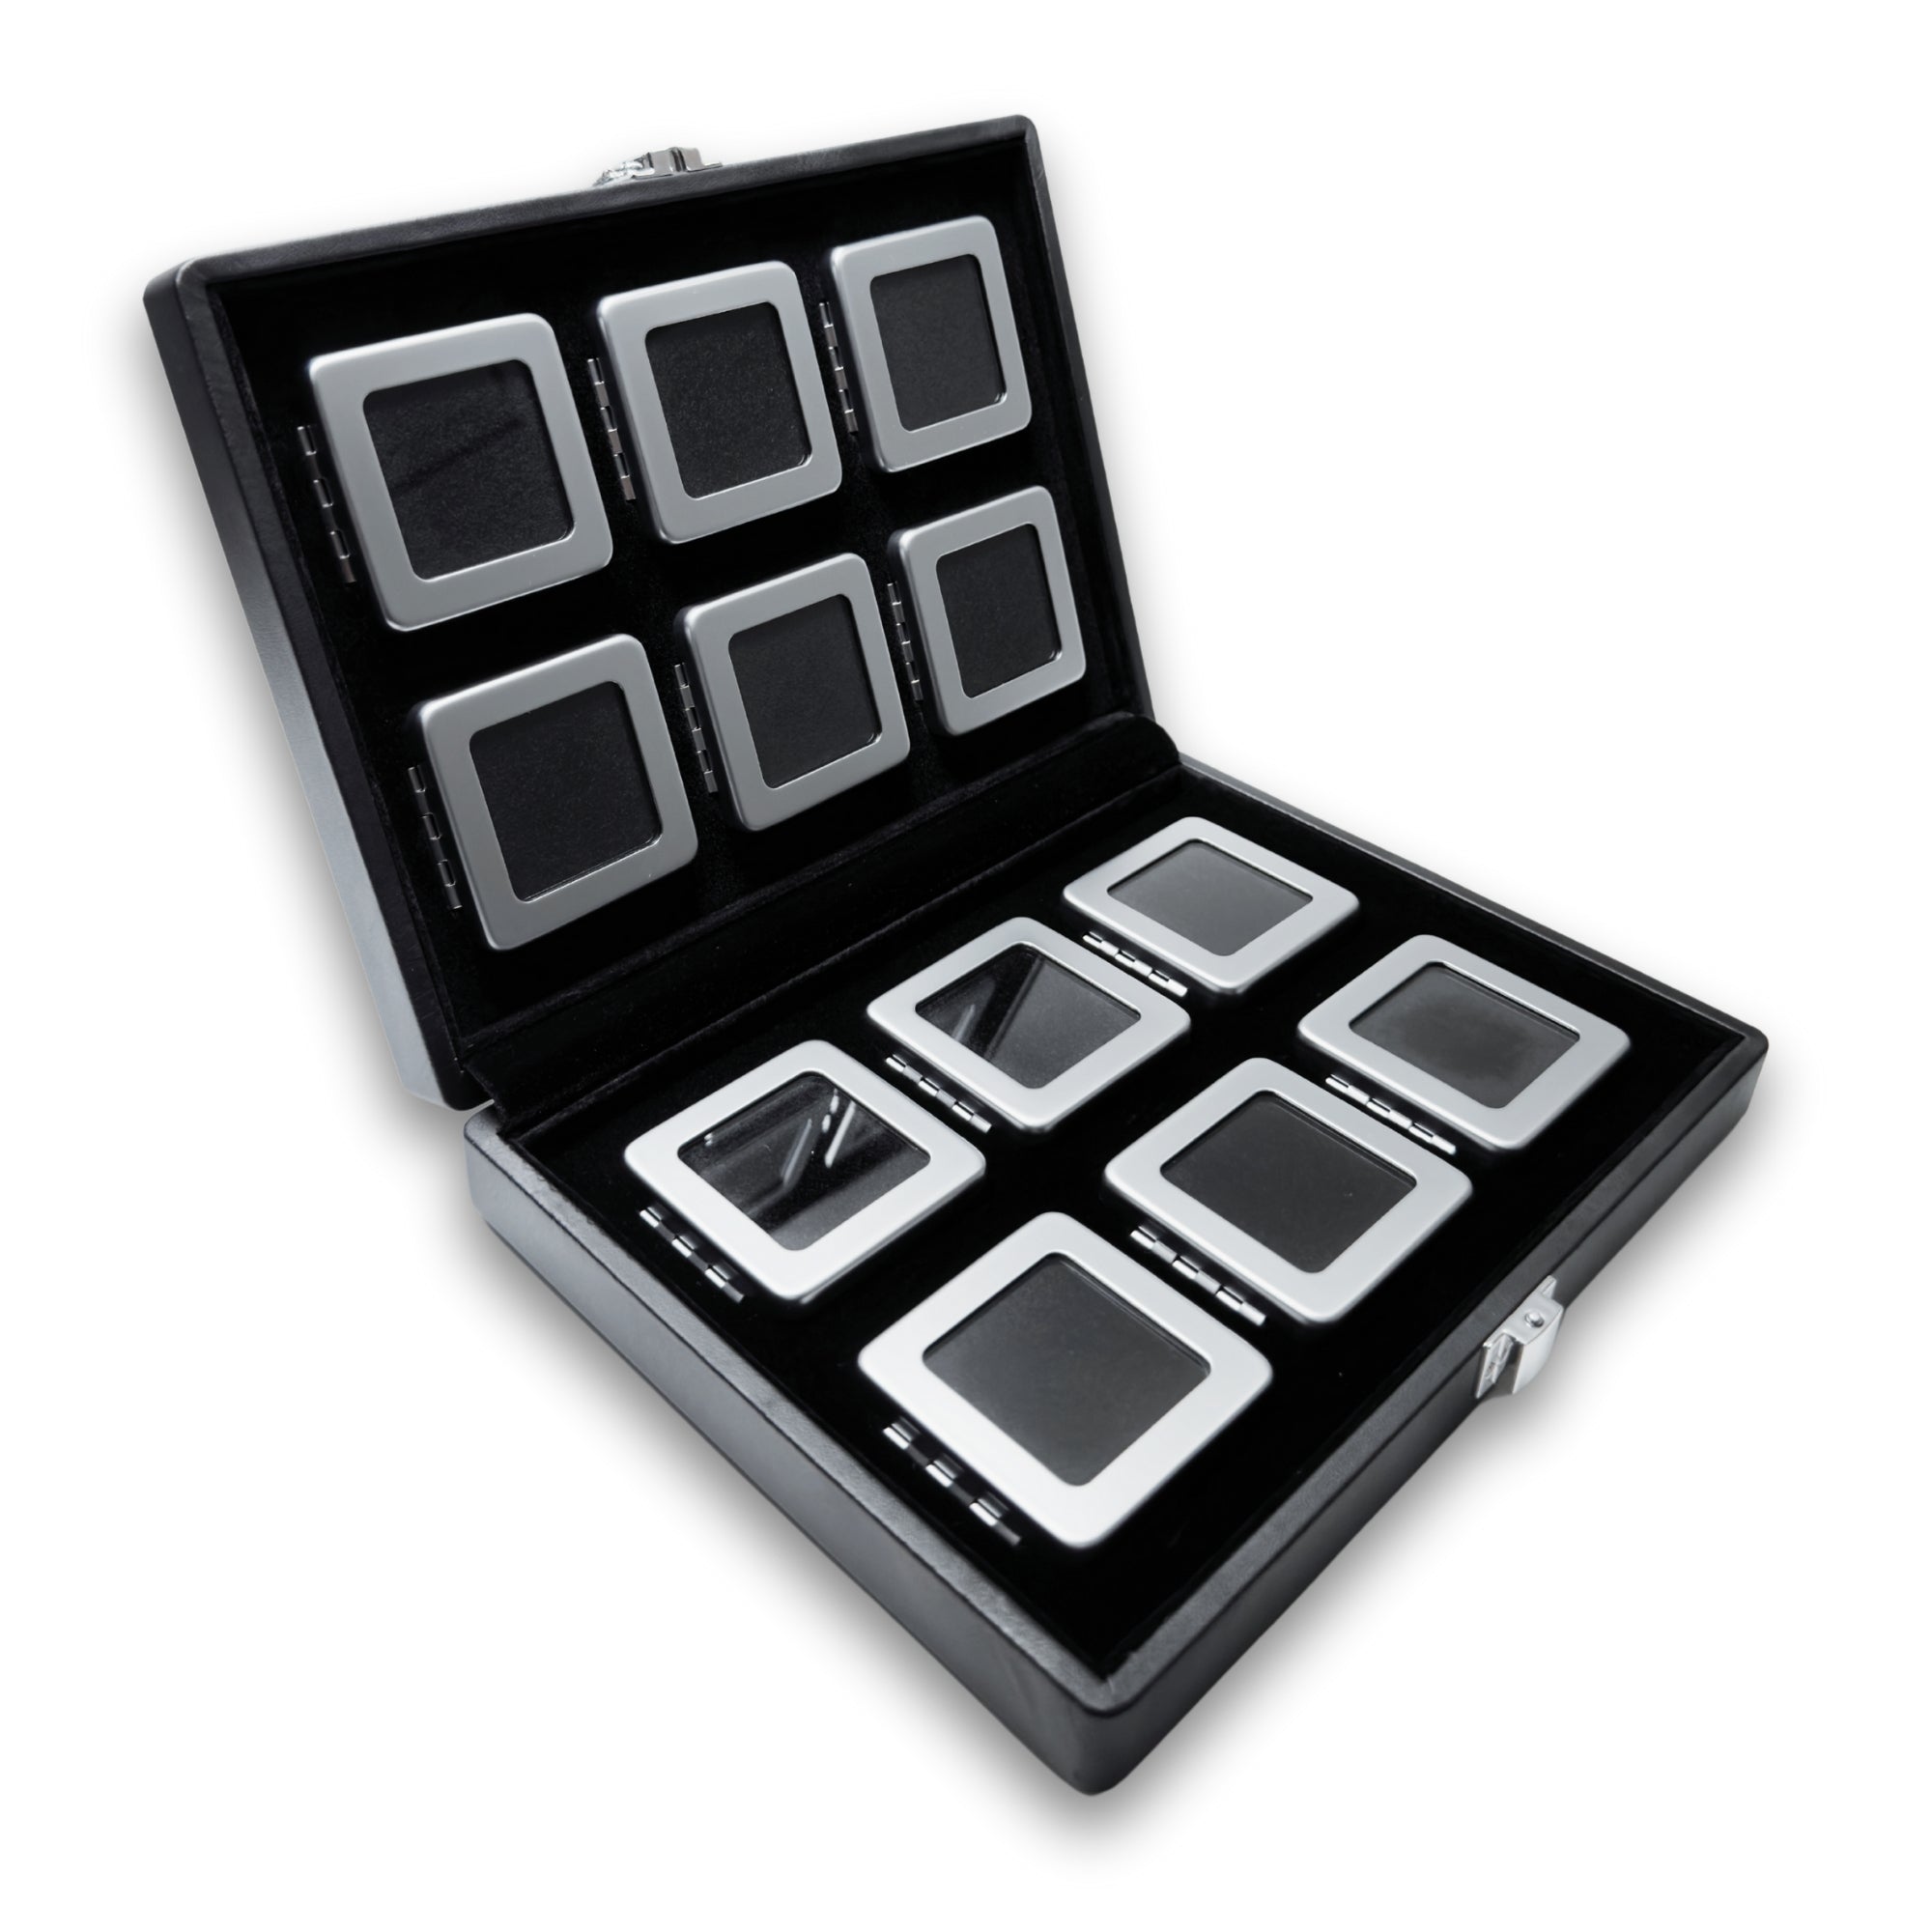 Luxusný set 12tich krabičiek na drahé kamene v elegantnej prezentačnej etuji